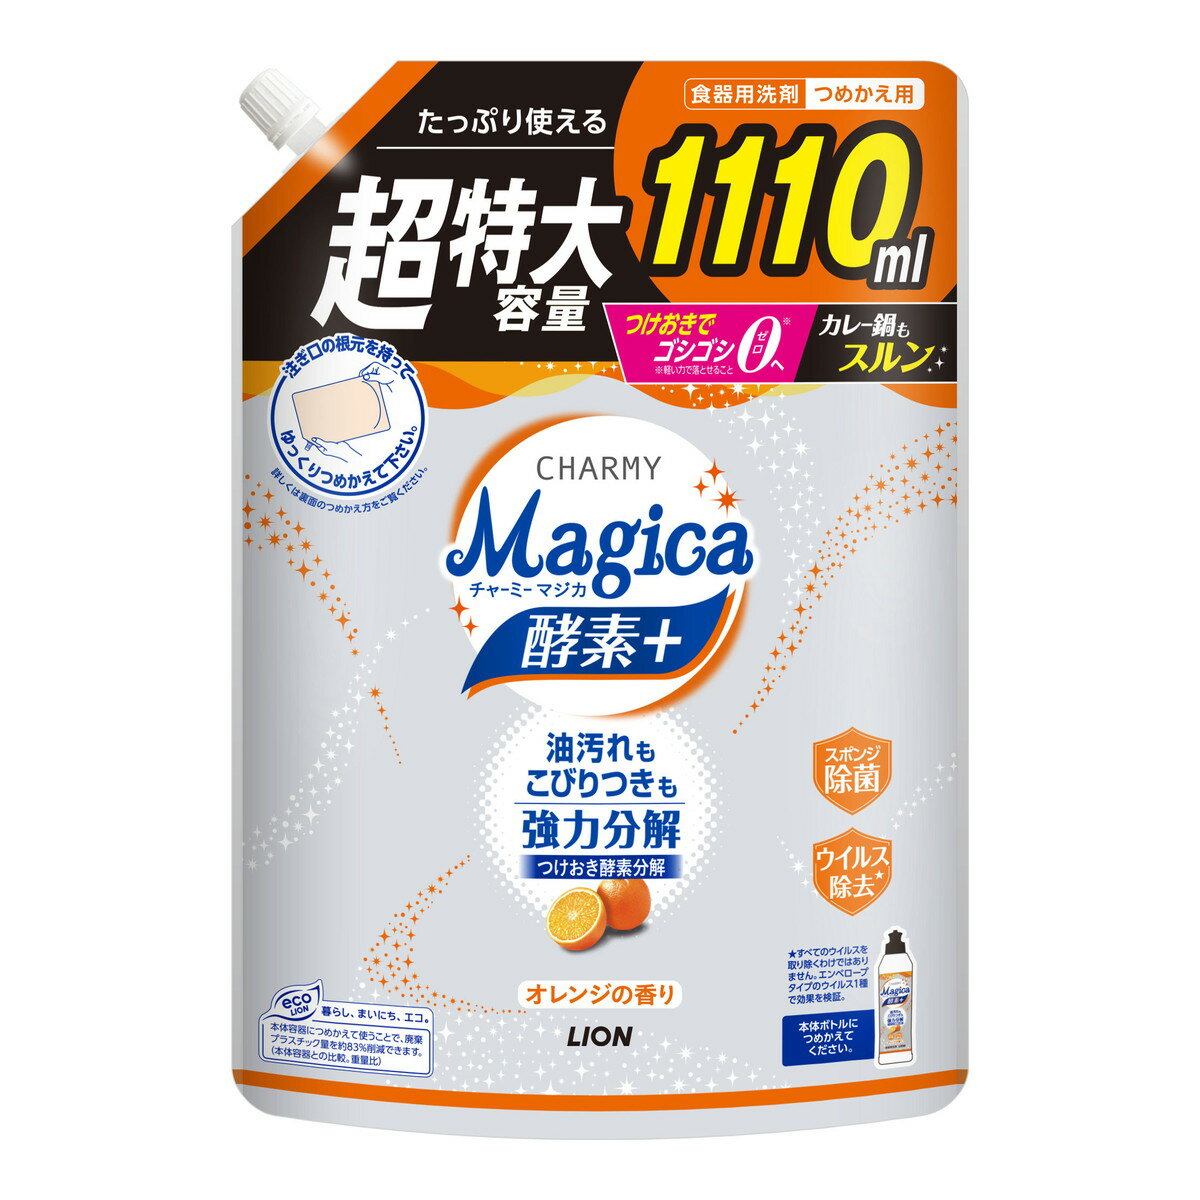 ライオン CHARMY Magica チャーミーマジカ 酵素+ プラス オレンジの香り つめかえ用 特大サイズ 1110ml 食器用洗剤 1